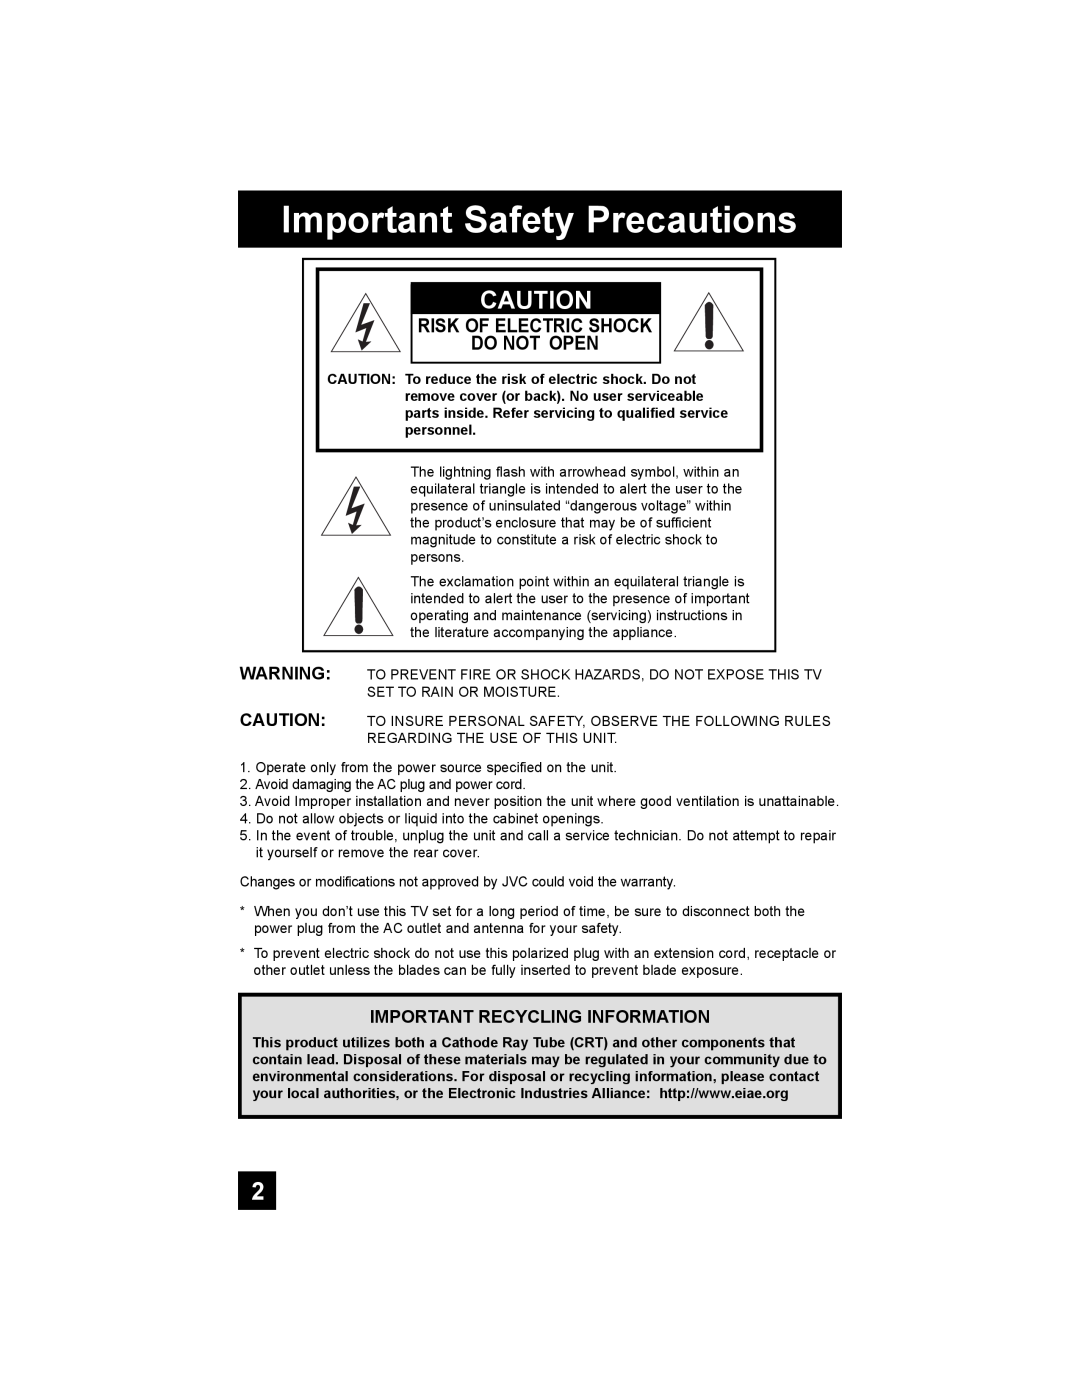 JVC AV-30W777, AV-30W767, AV 30W777 manual Important Safety Precautions, Risk Of Electric Shock Do Not Open 